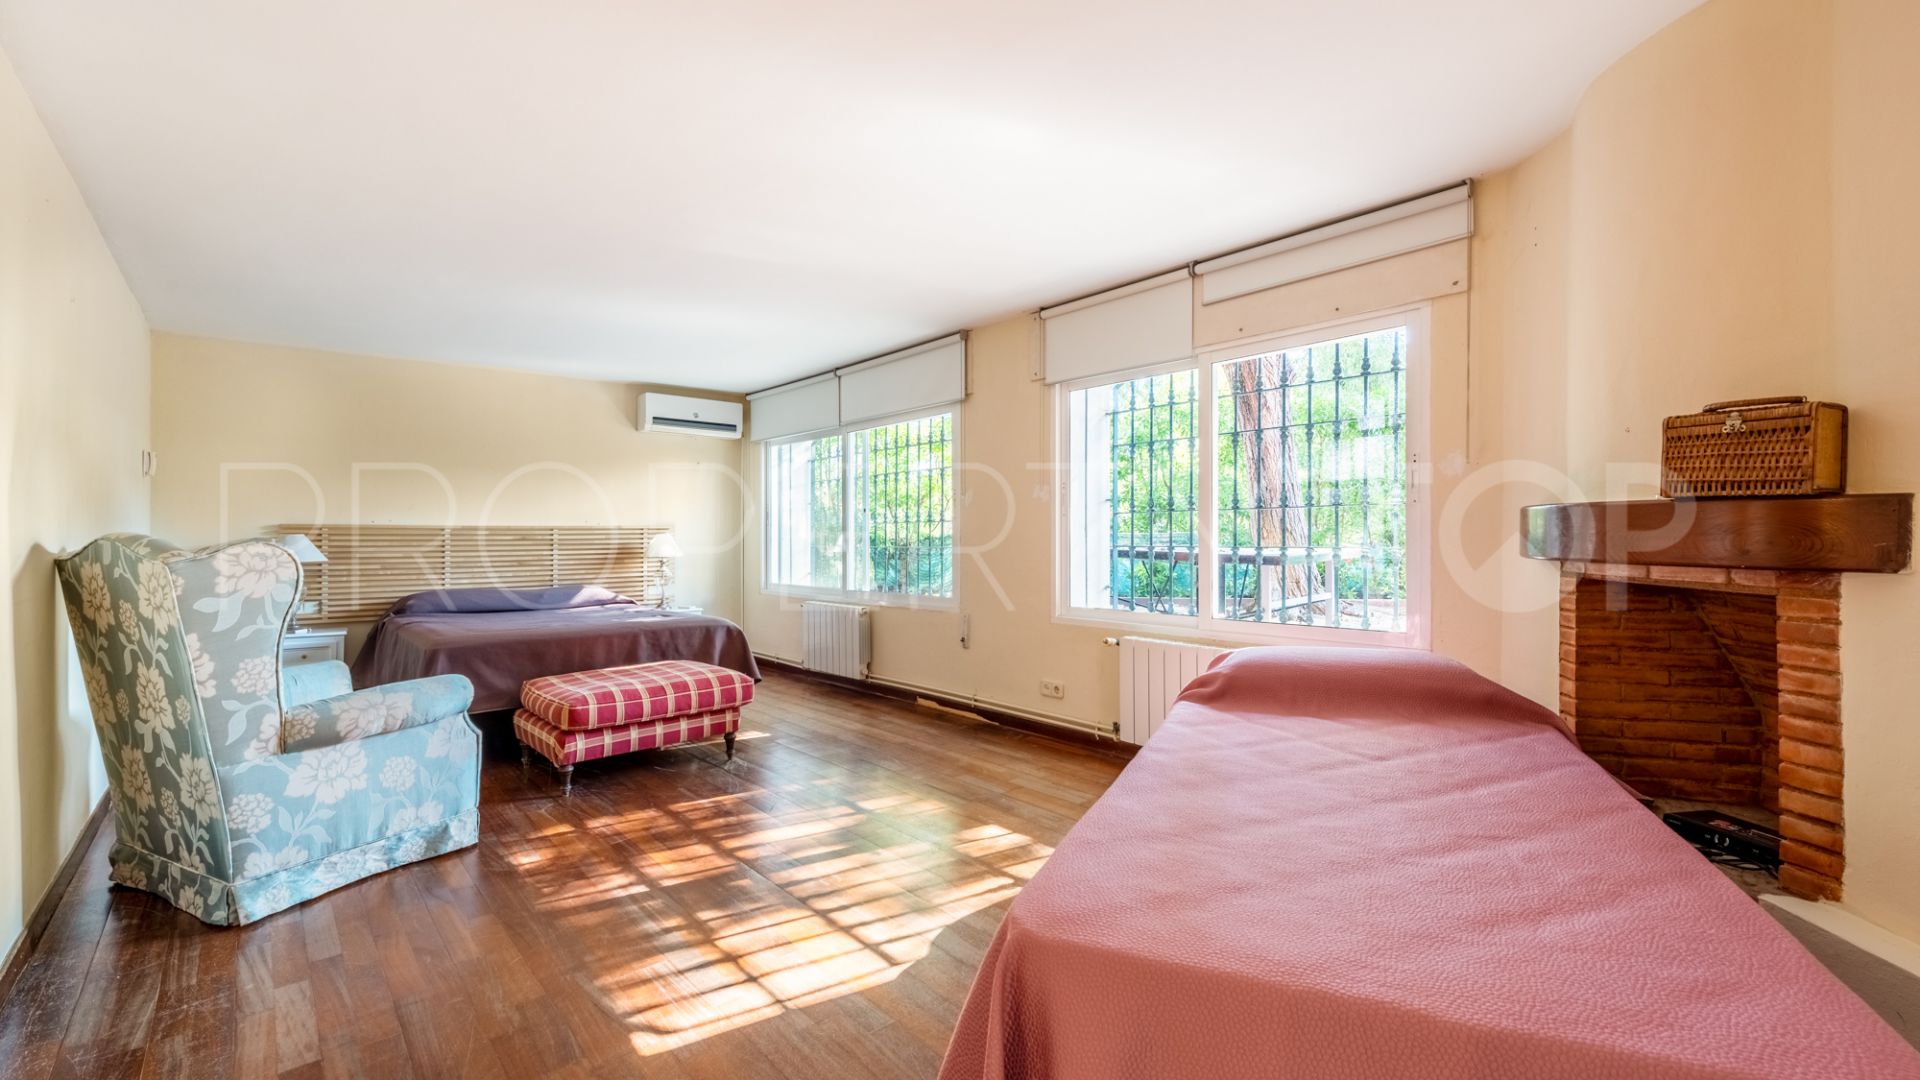 Villa with 5 bedrooms for sale in Elviria